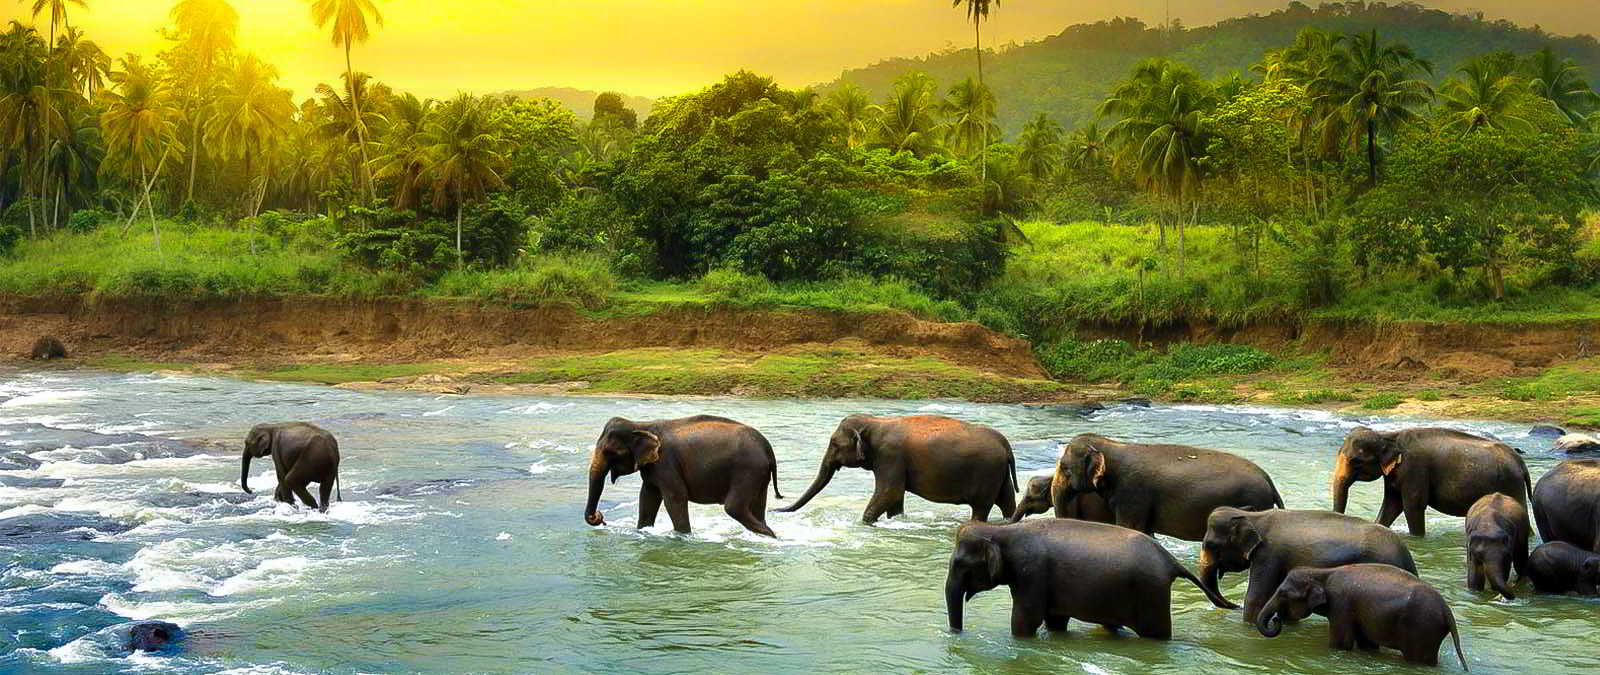 مرکز نگهداری فیل های پیناوالا